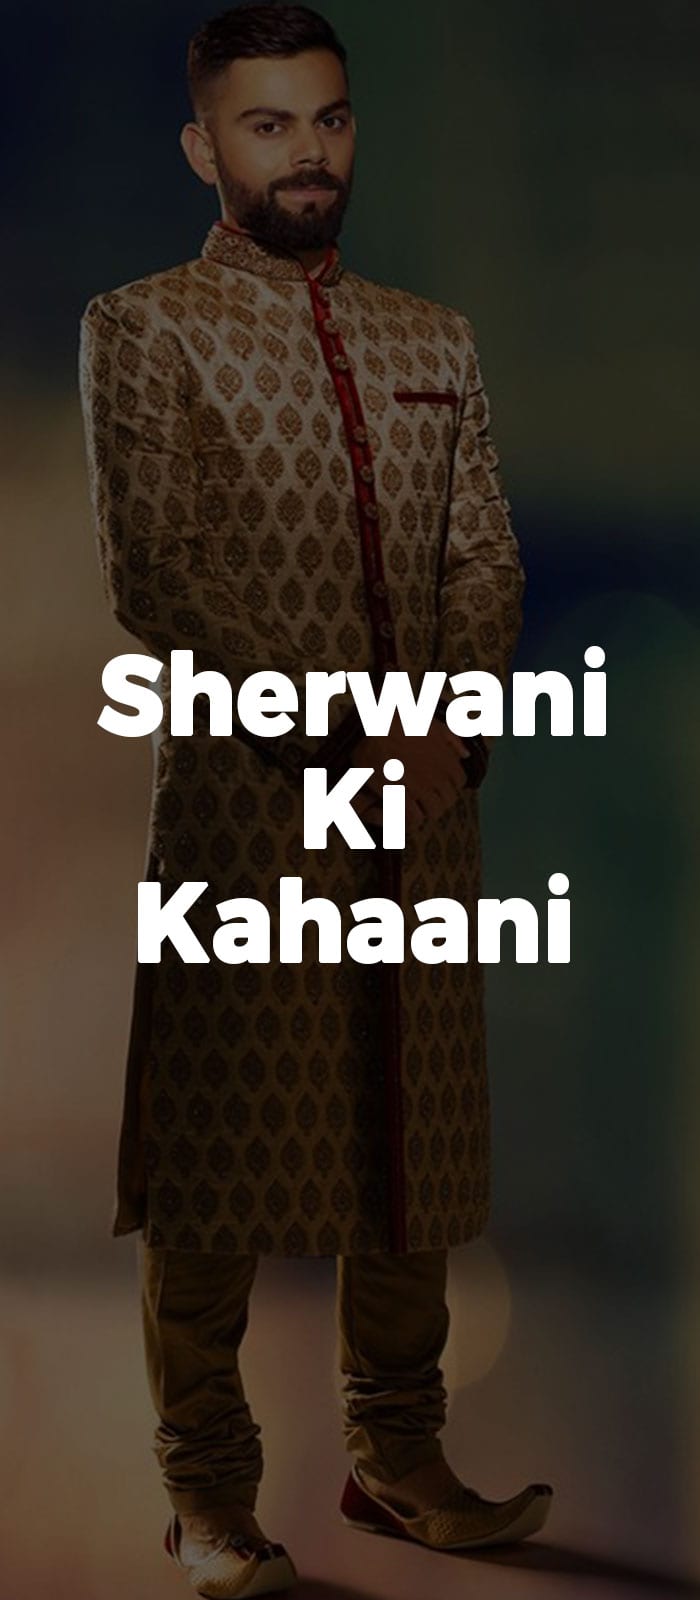 Sherwani Ki Kahaani